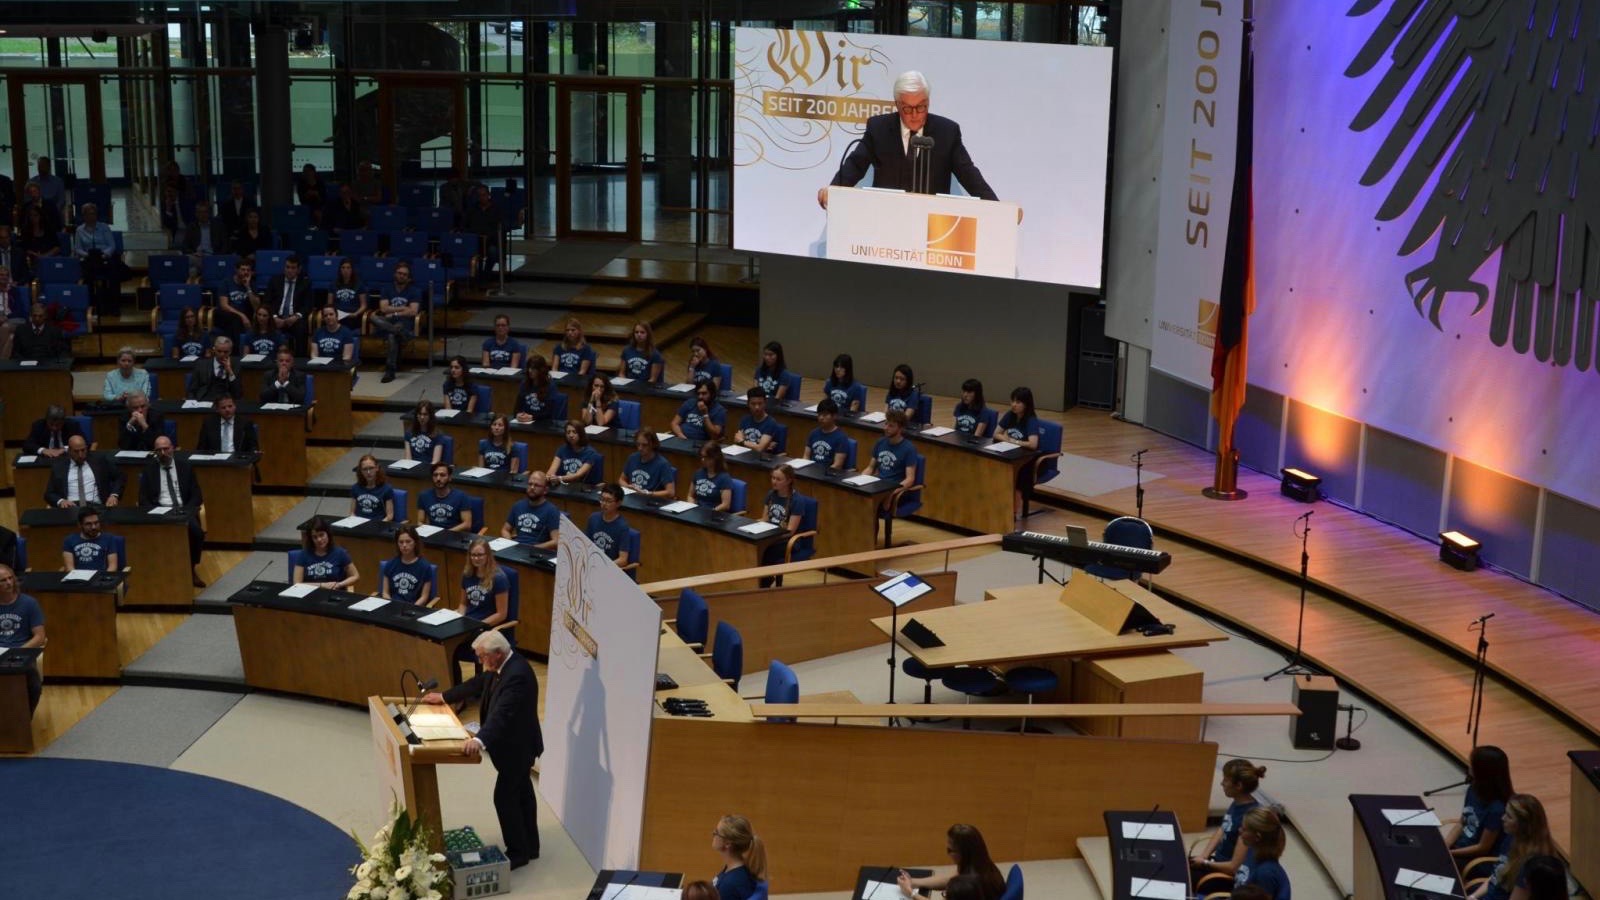 You are currently viewing Höhepunkt des Jubiläumsjahres – Steinmeier beim Festakt zu 200 Jahren Uni Bonn